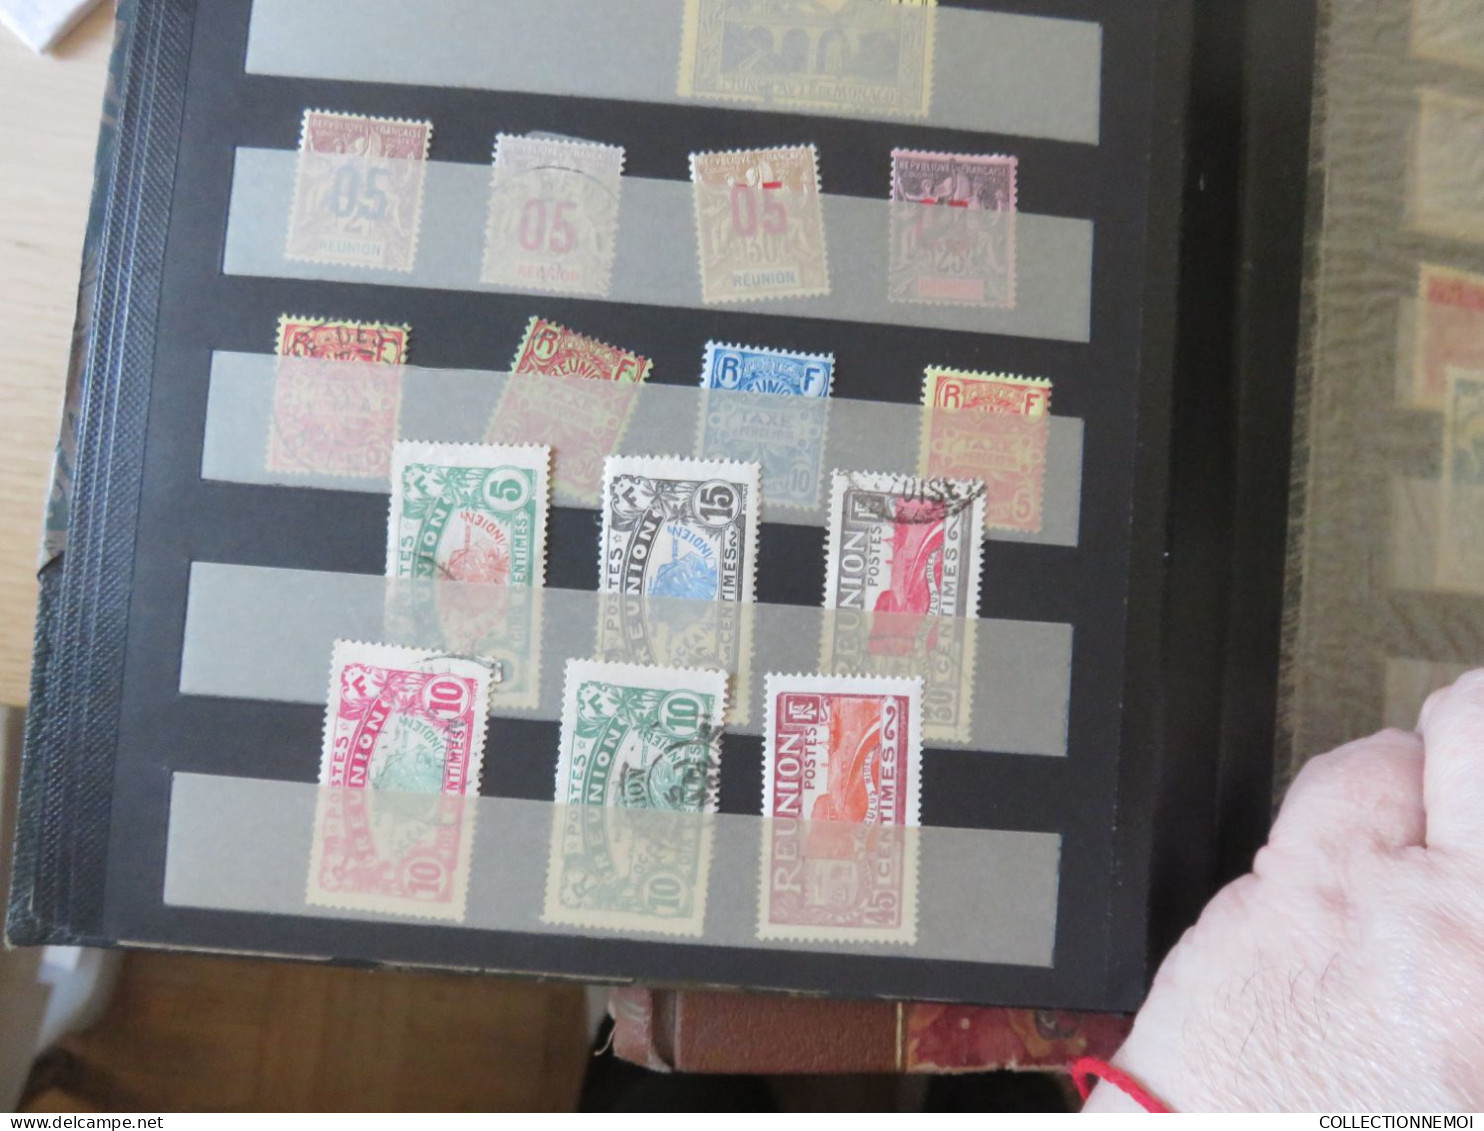 dans 4 classeurs des timbres collés ,,je montre tout ,,,,,,,,,,,,,,PRIX DERISOIRE ,,,,,,,,,,, timbres collés